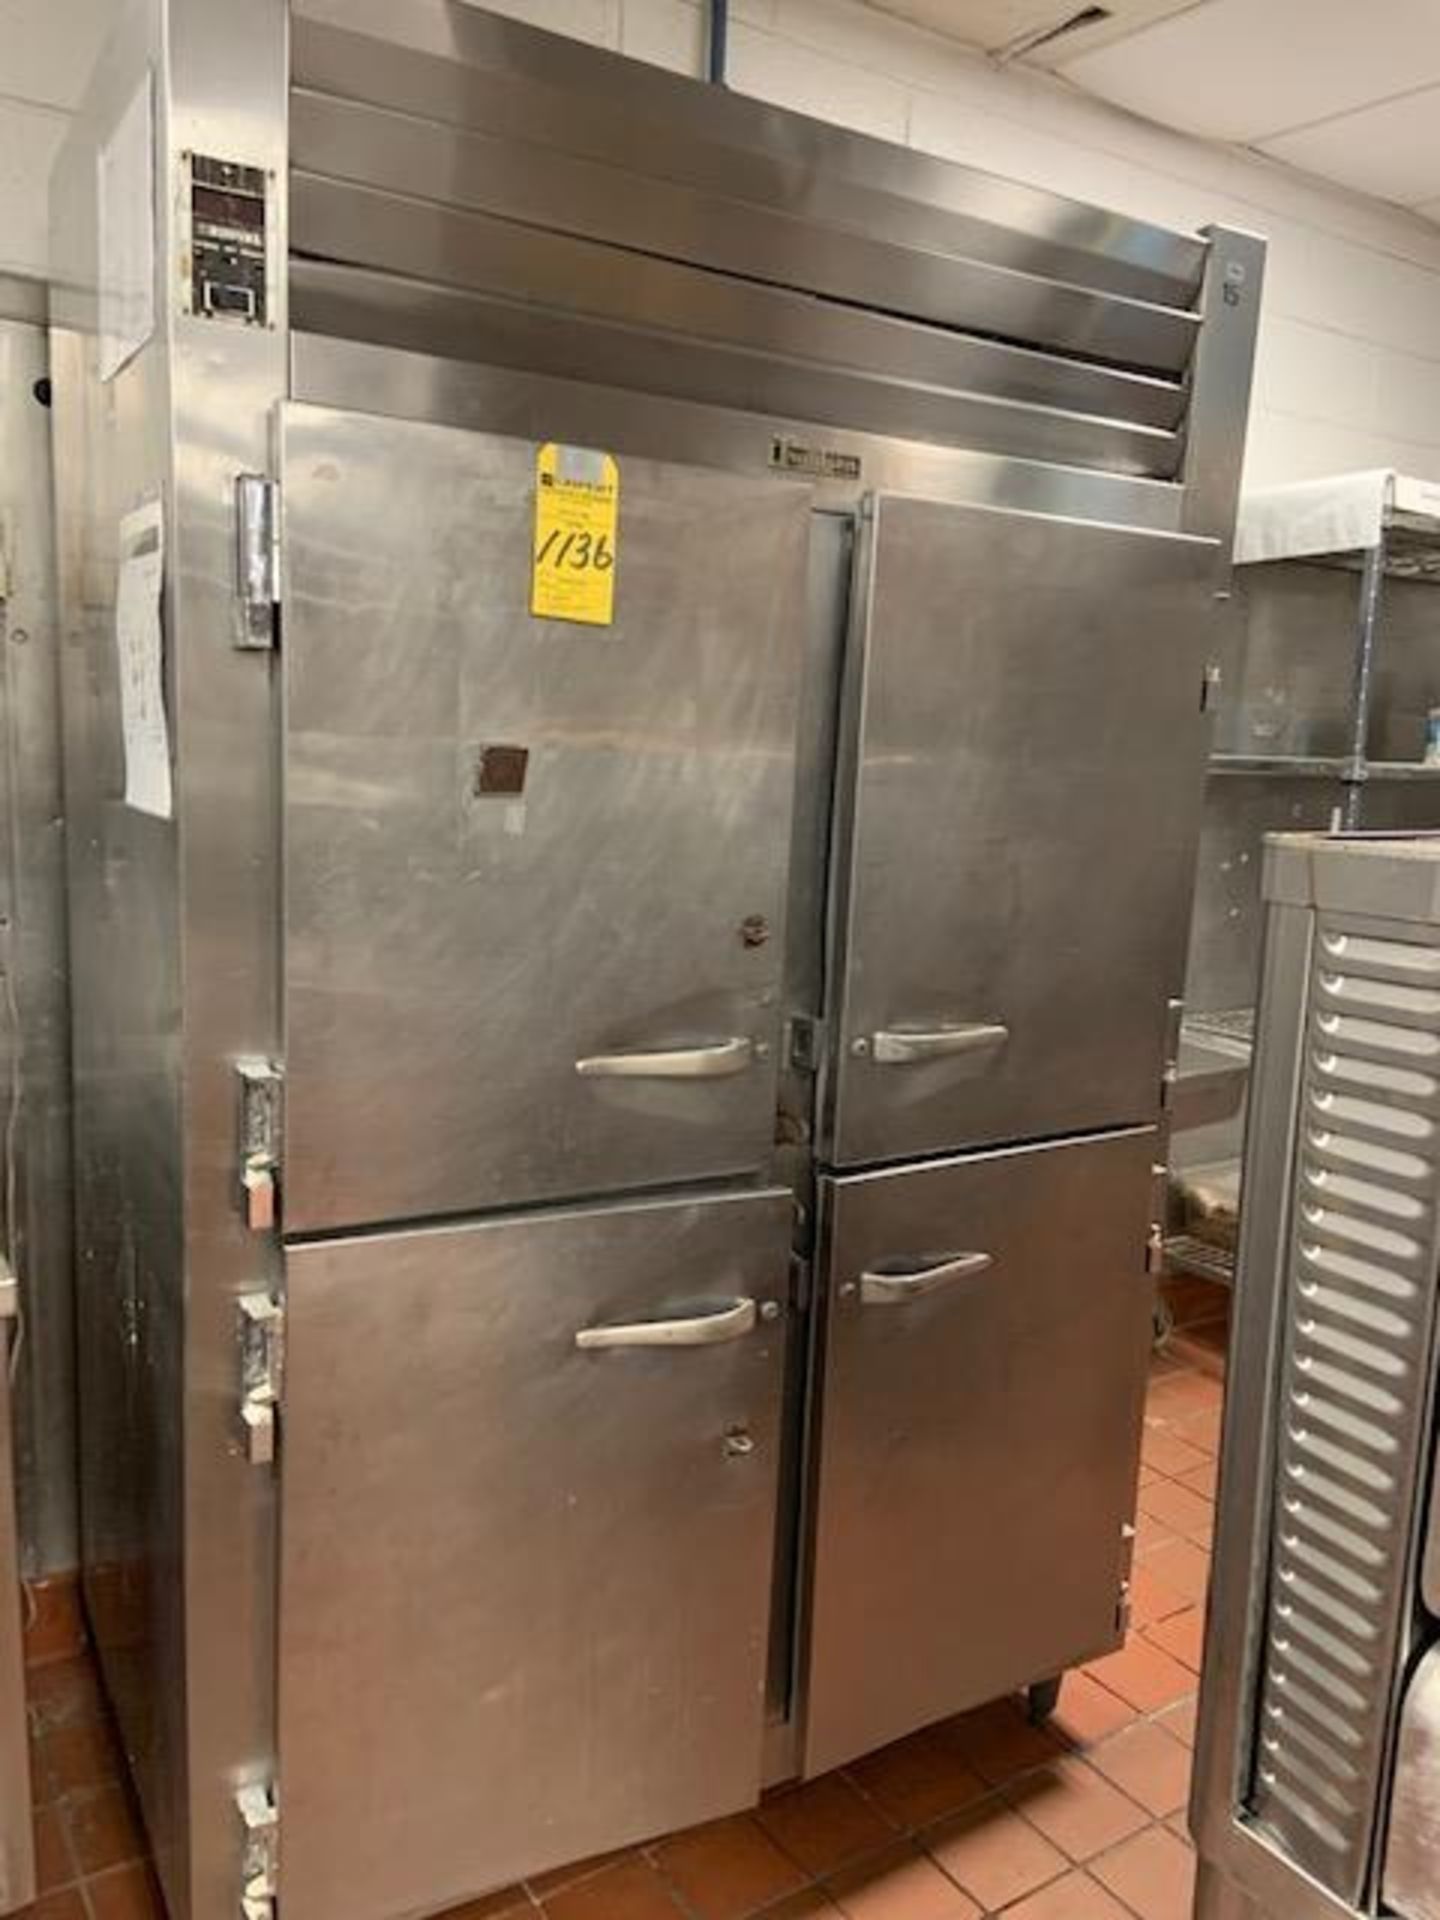 Traulsen G2200 (4) 1/2 Door Freezer, 1st Floor Kitchen